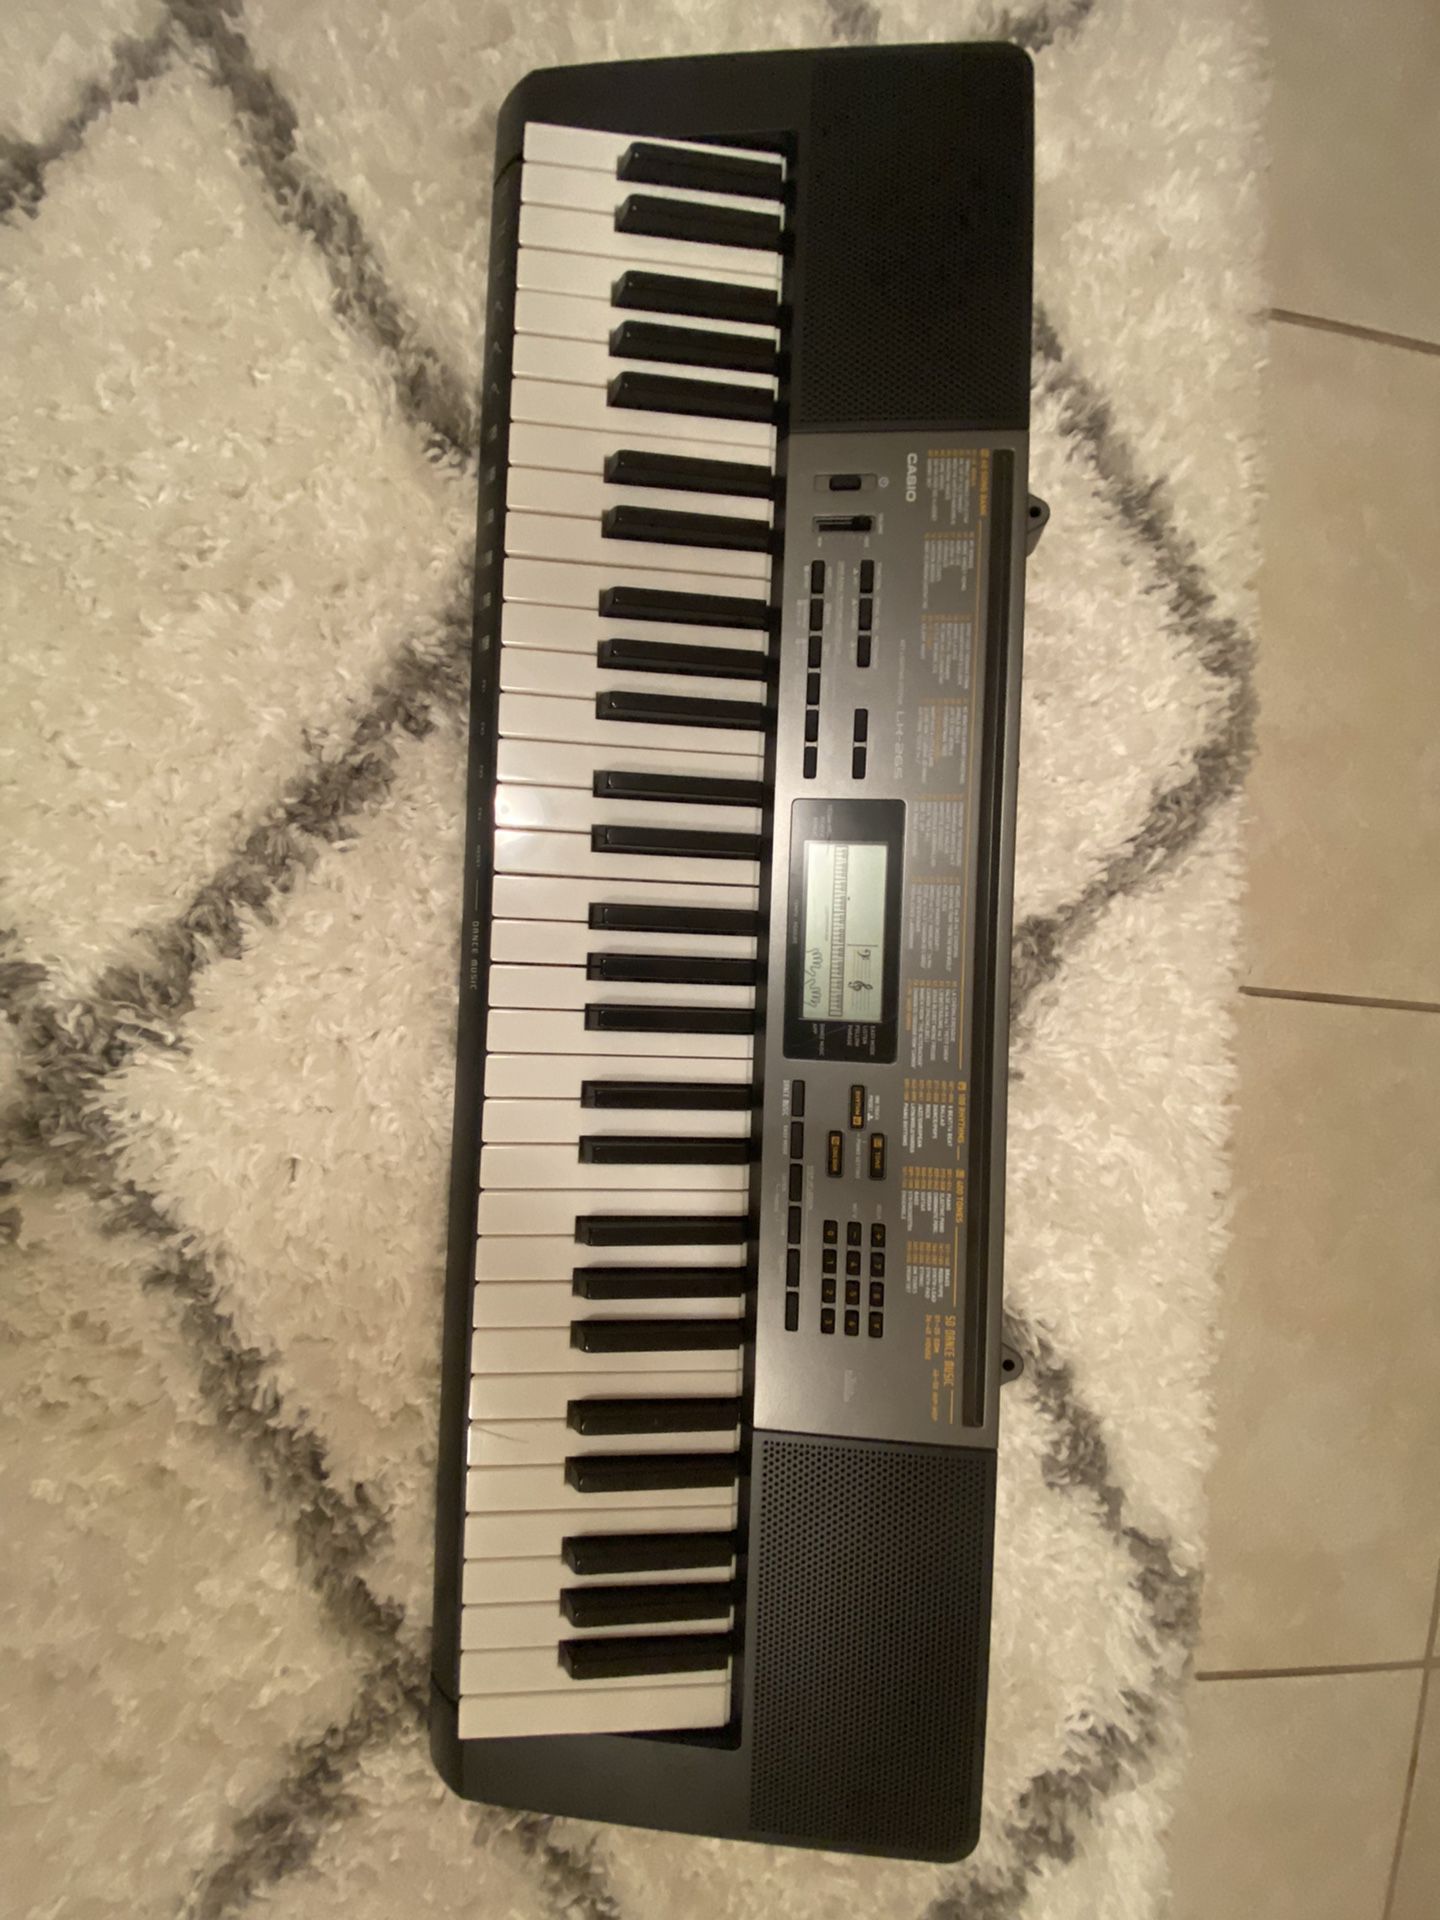 Casio LK-265 Keyboard Digital Piano Sale in Winter Park, FL - OfferUp